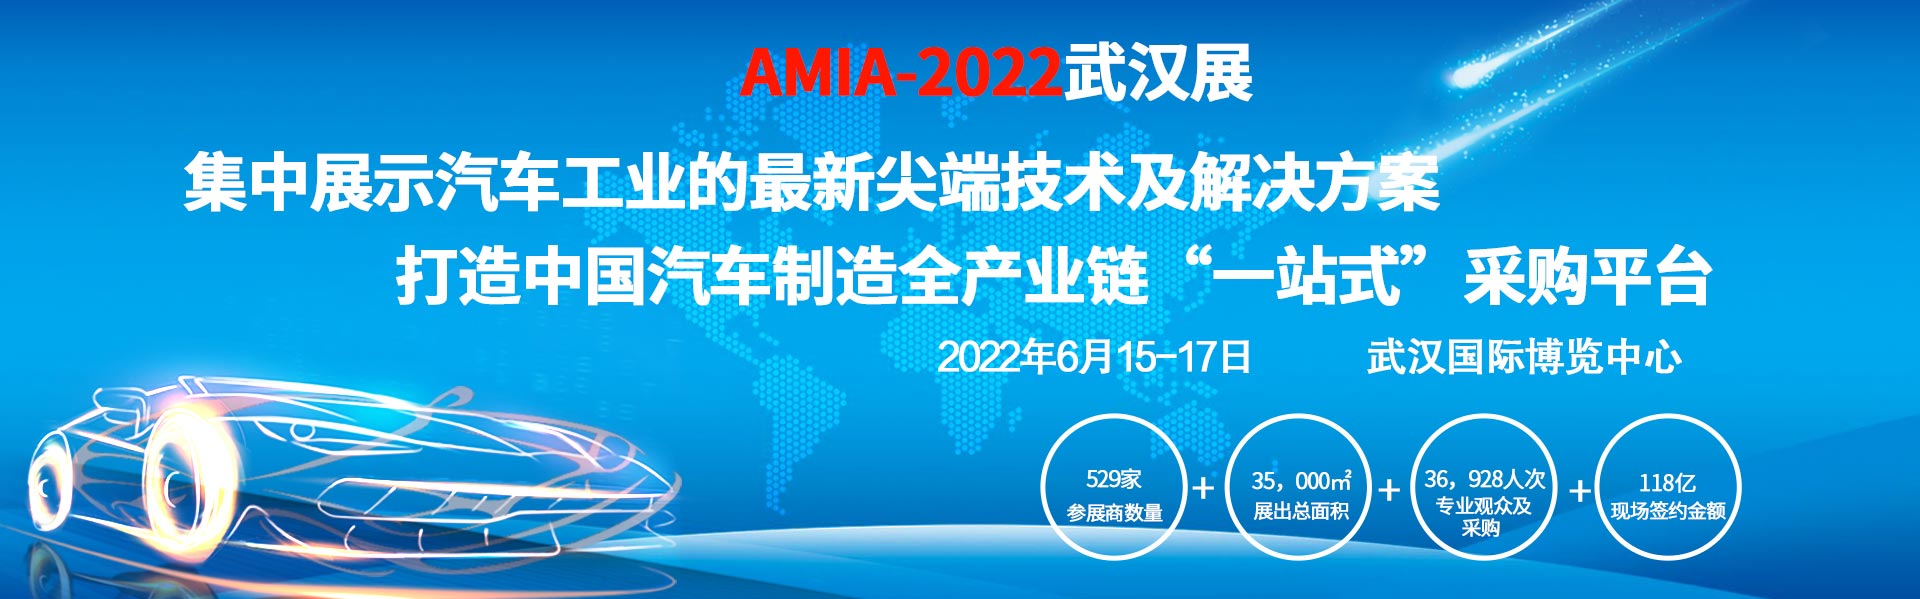 [武汉展会动态]APW-2022中国（武汉）国际汽车零部件博览会 